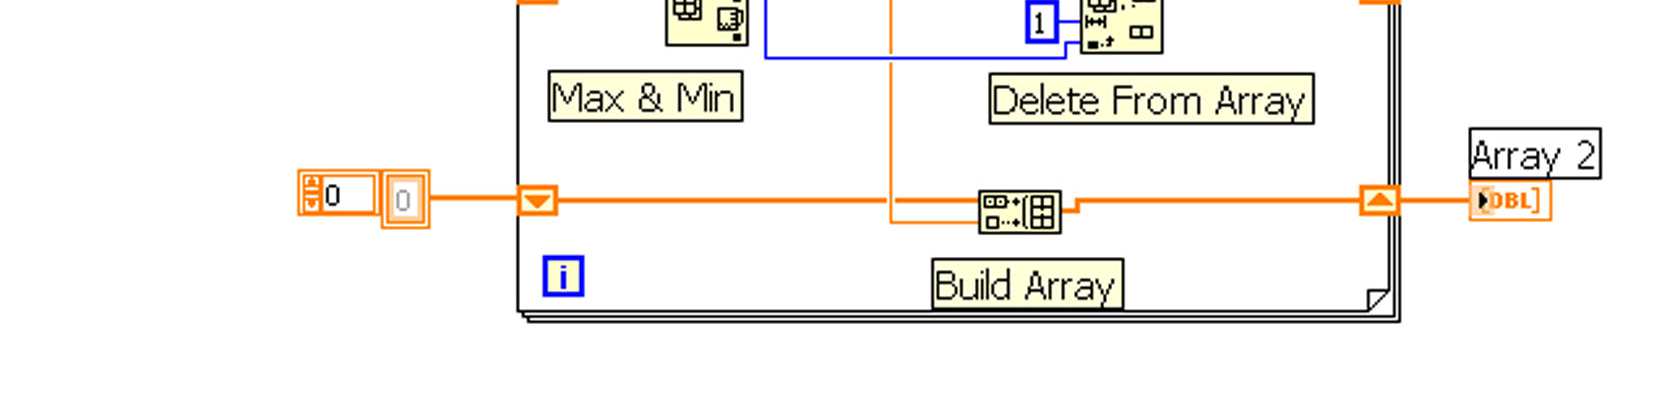 Σχήµα 3.12: Εισαγωγή της συνάρτησης «Delete From Array» στο Block diagram και το µενού βοήθειας. Παράδειγµα 1. Στο σχήµα 3.